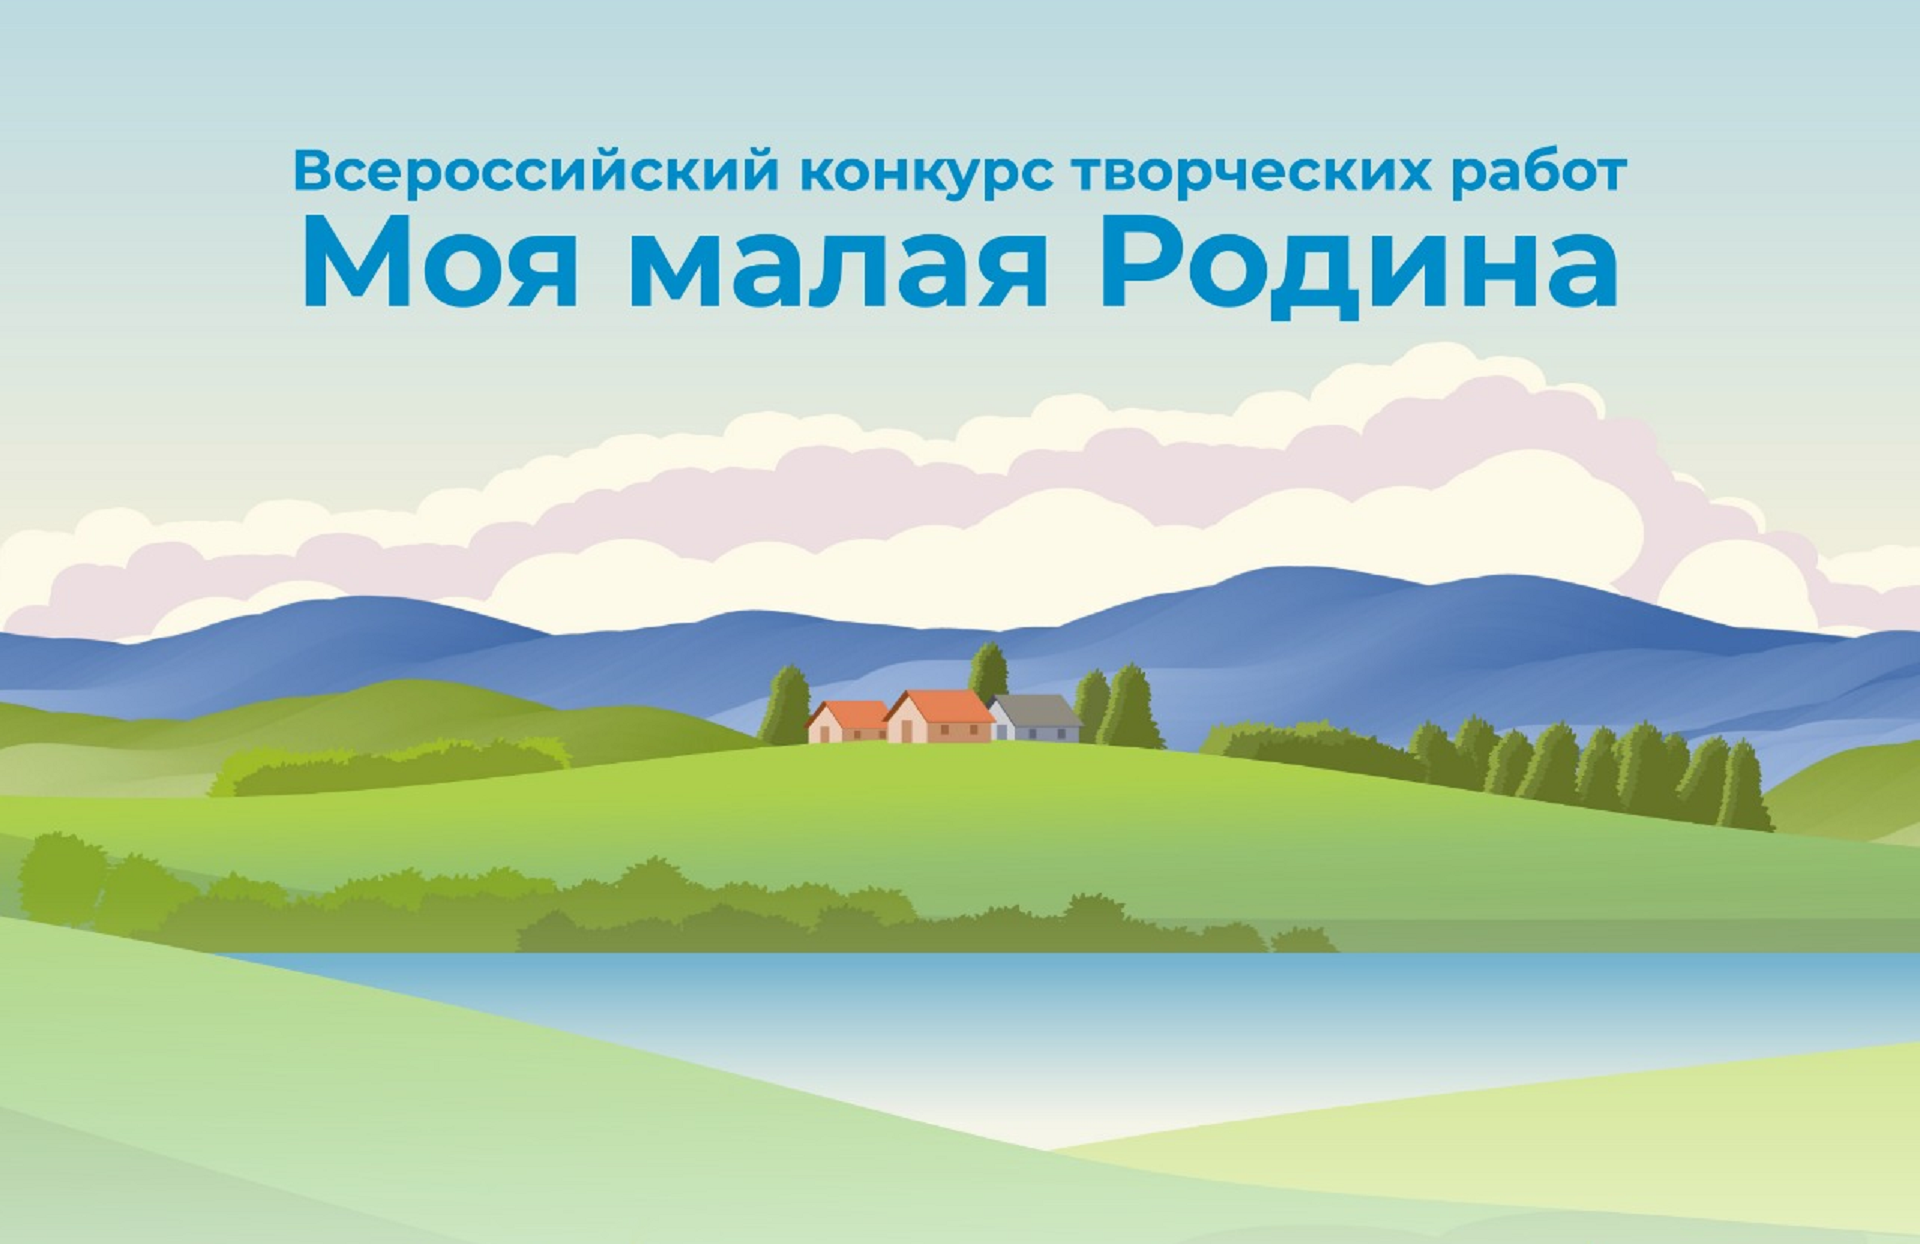 Сельская молодёжь запускает Всероссийский конкурс творческих работ «Моя малая родина»!